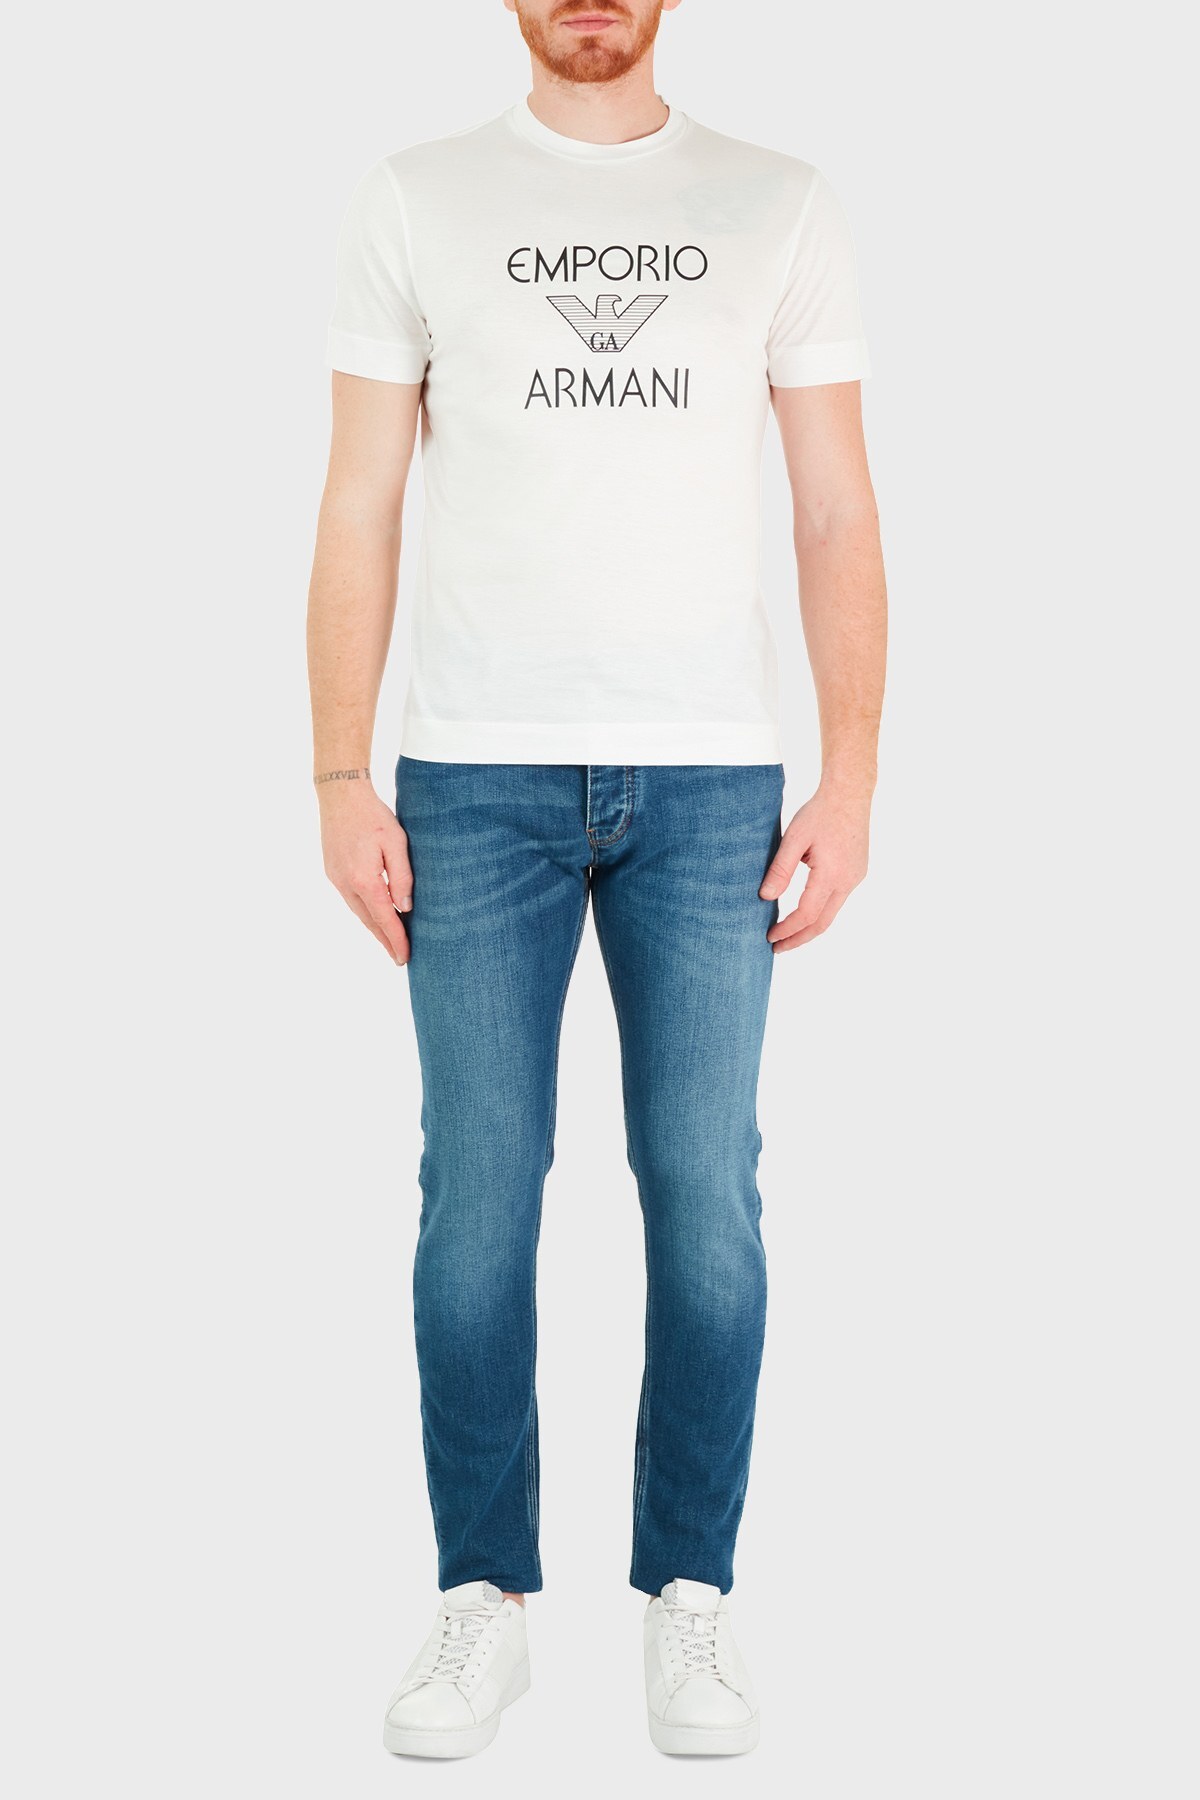 Emporio Armani Slim Fit Pamuklu J75 Jeans Erkek Kot Pantolon 3K1J75 1DX2Z 0942 LACİVERT